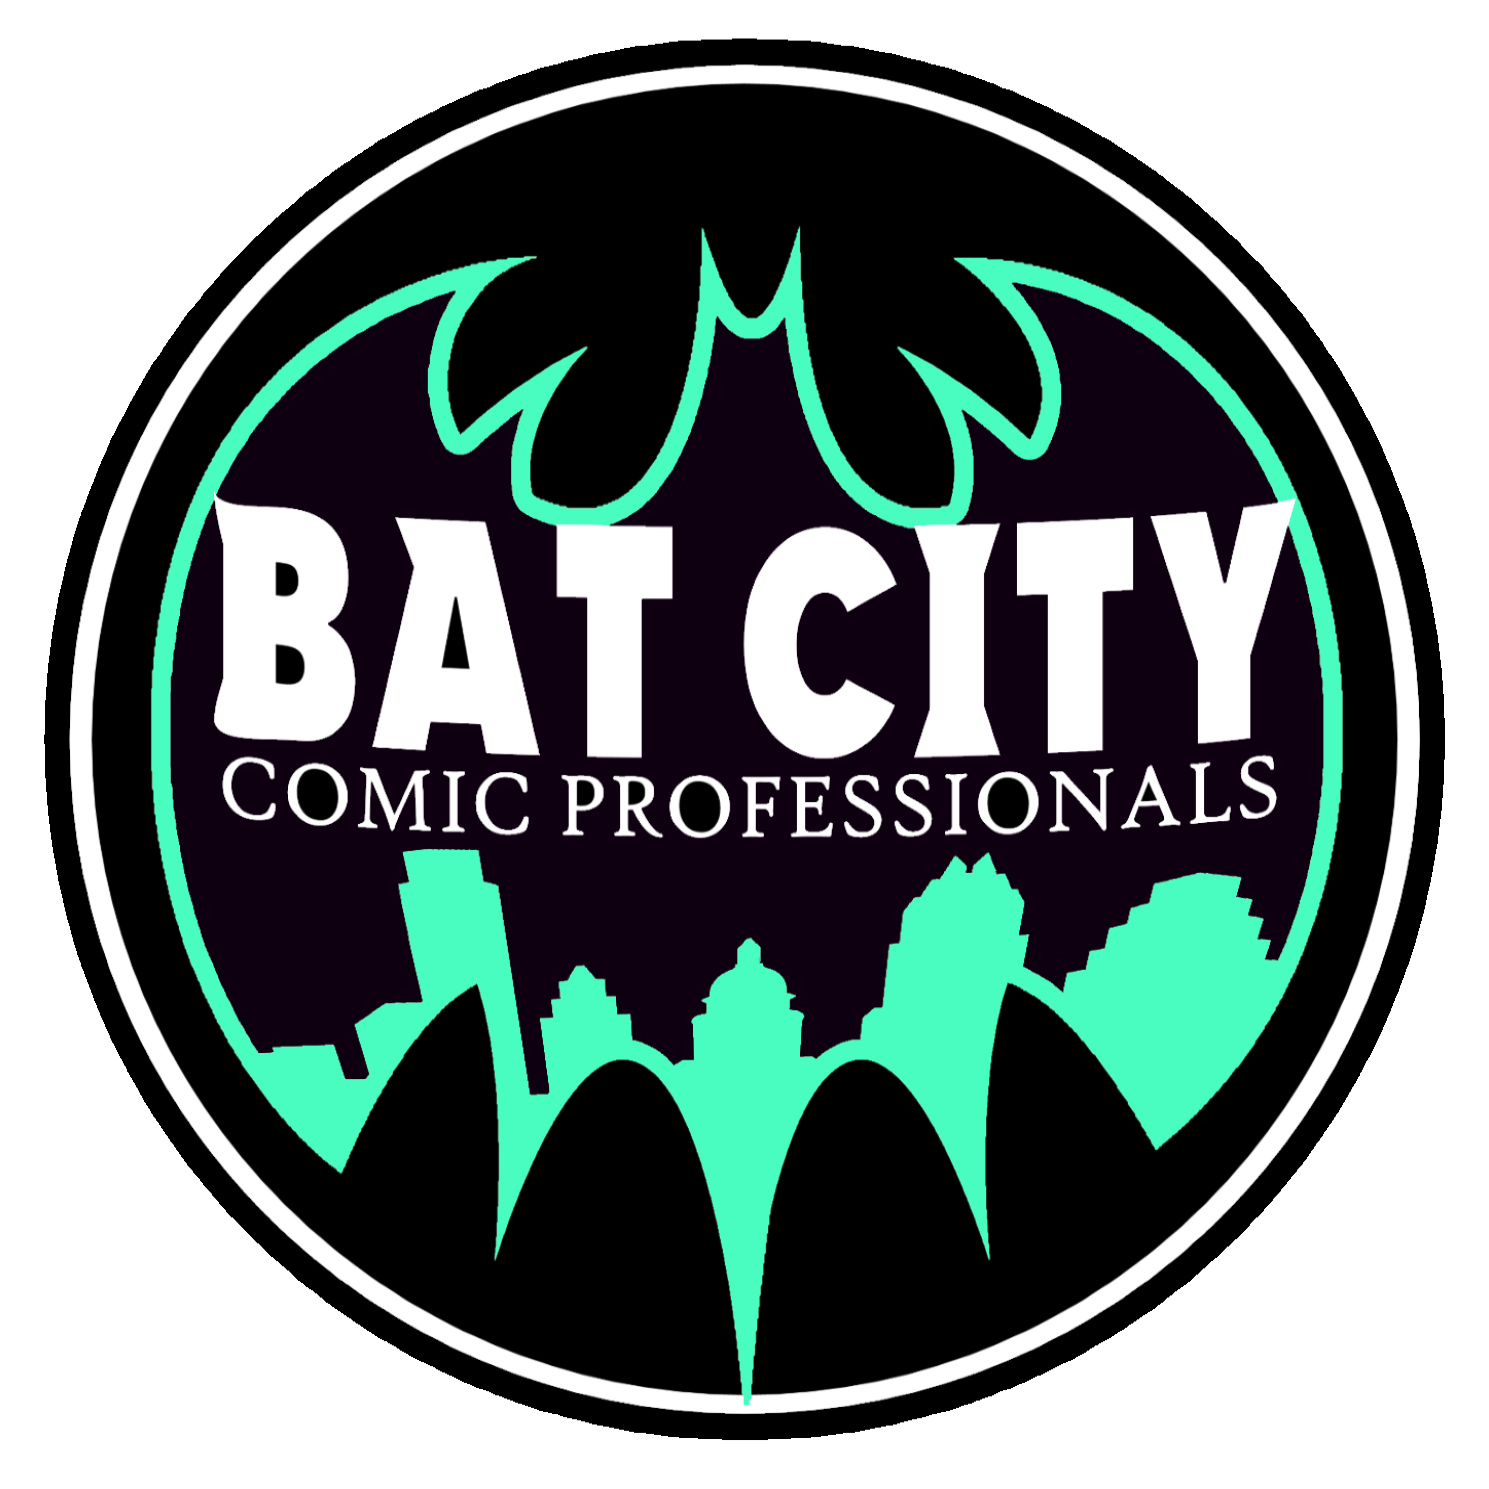 Bat City Comic Professionals